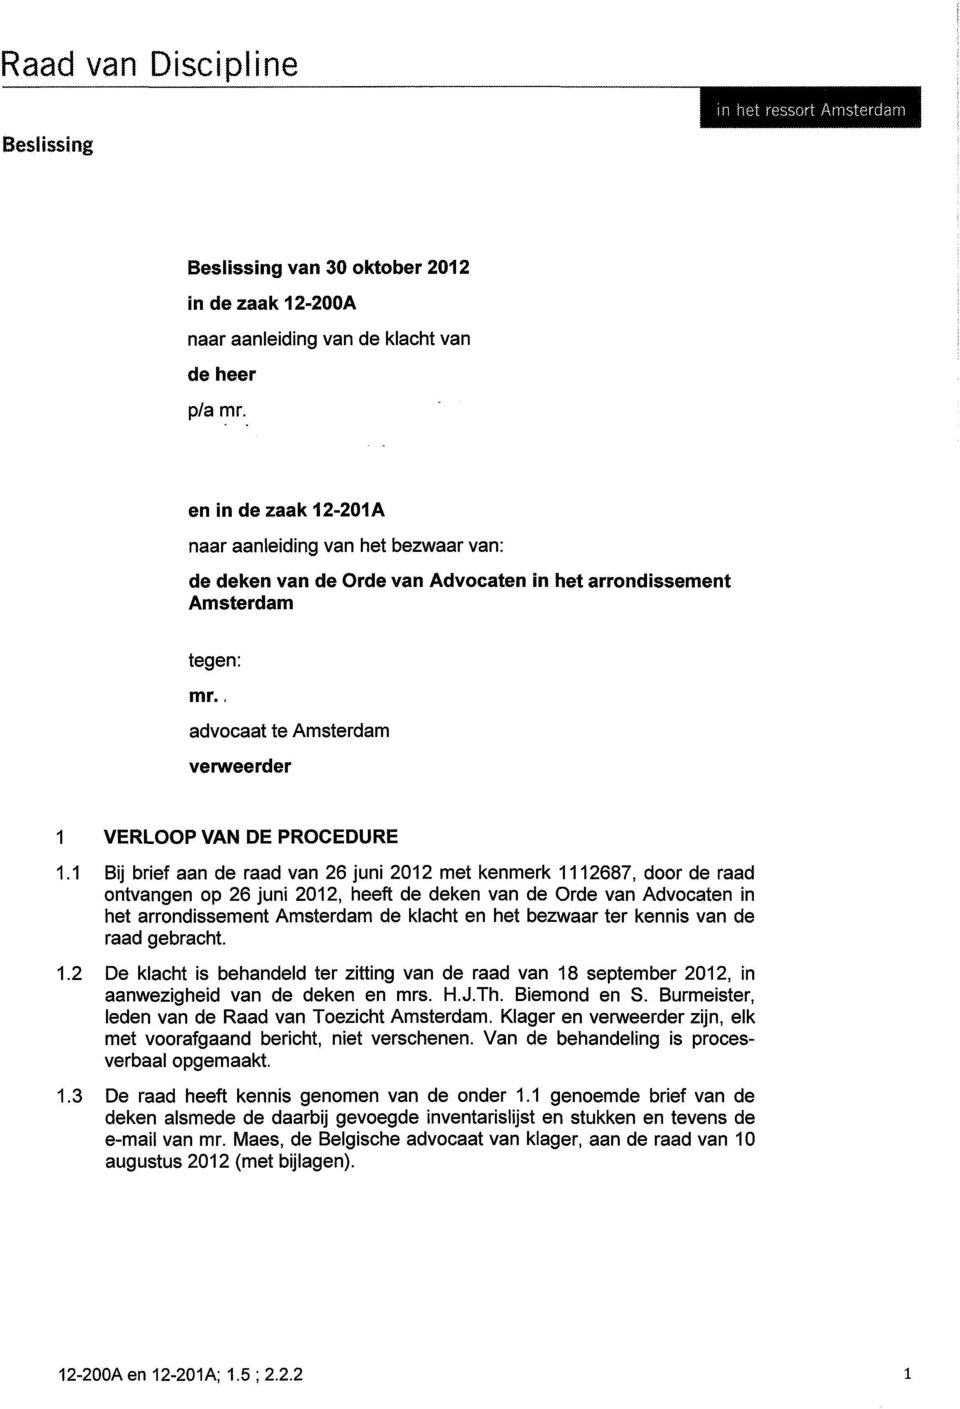 1 Bij brief aan de raad van 26 juni 2012 met kenmerk 1112687, door de raad ontvangen op 26 juni 2012, heeft de deken van de Orde van Advocaten in het arrondissement Amsterdam de klacht en het bezwaar